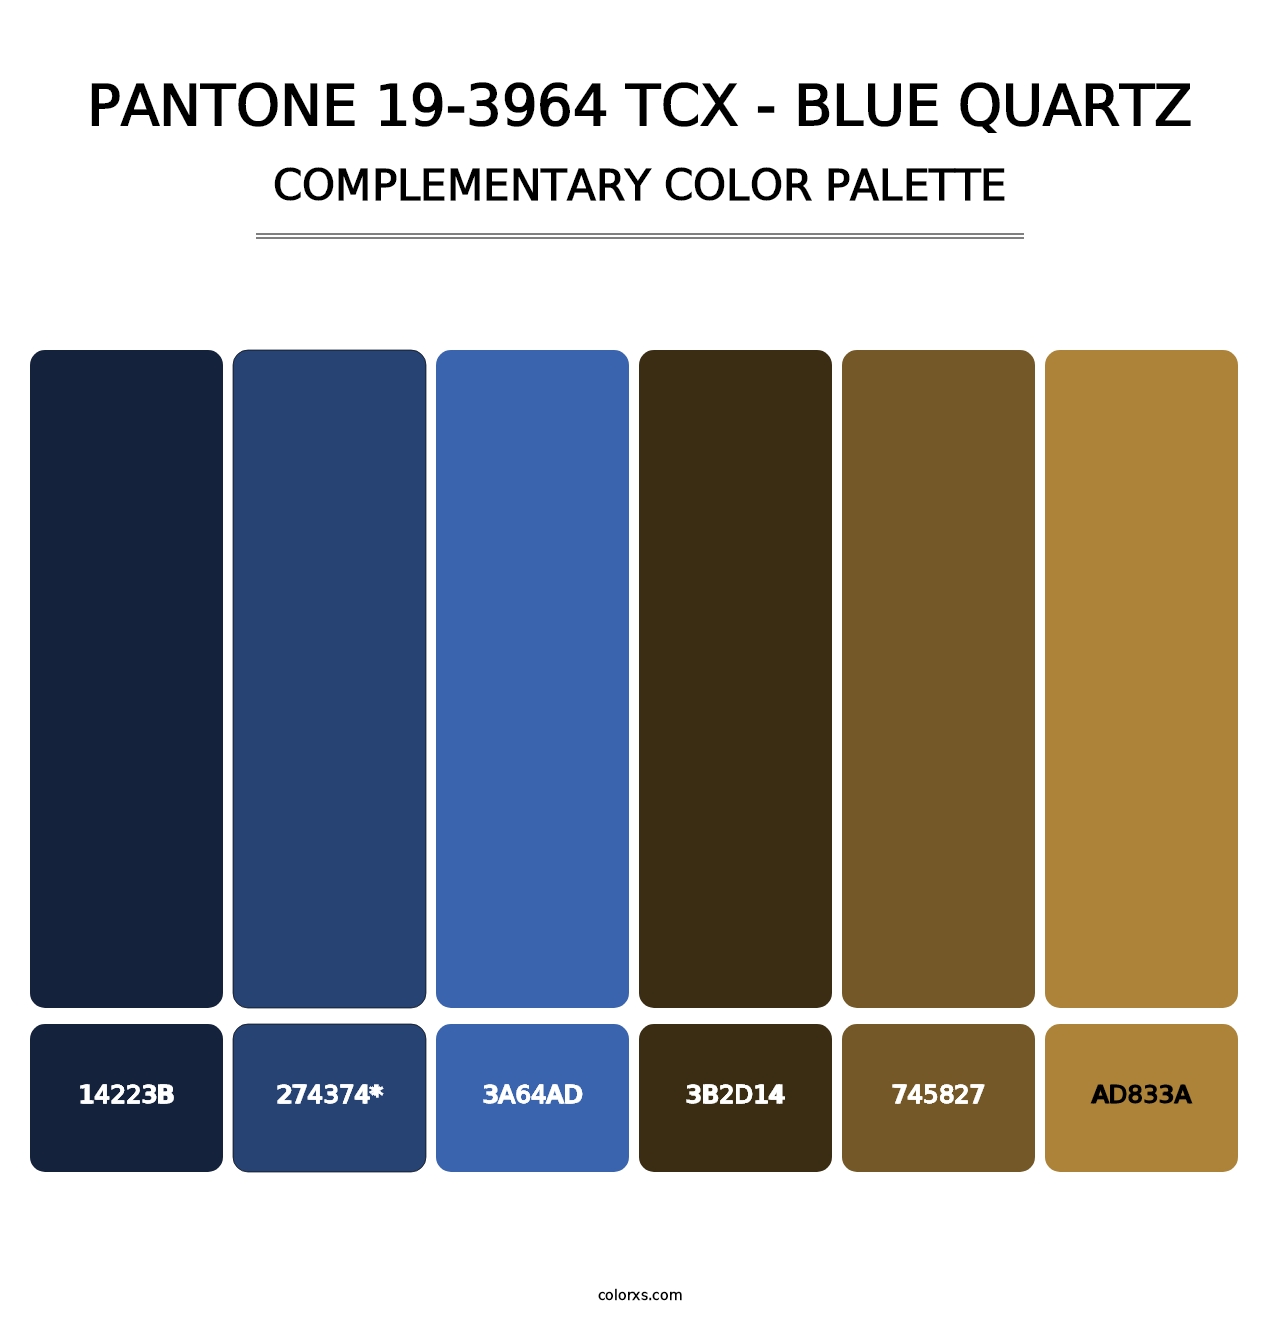 PANTONE 19-3964 TCX - Blue Quartz - Complementary Color Palette